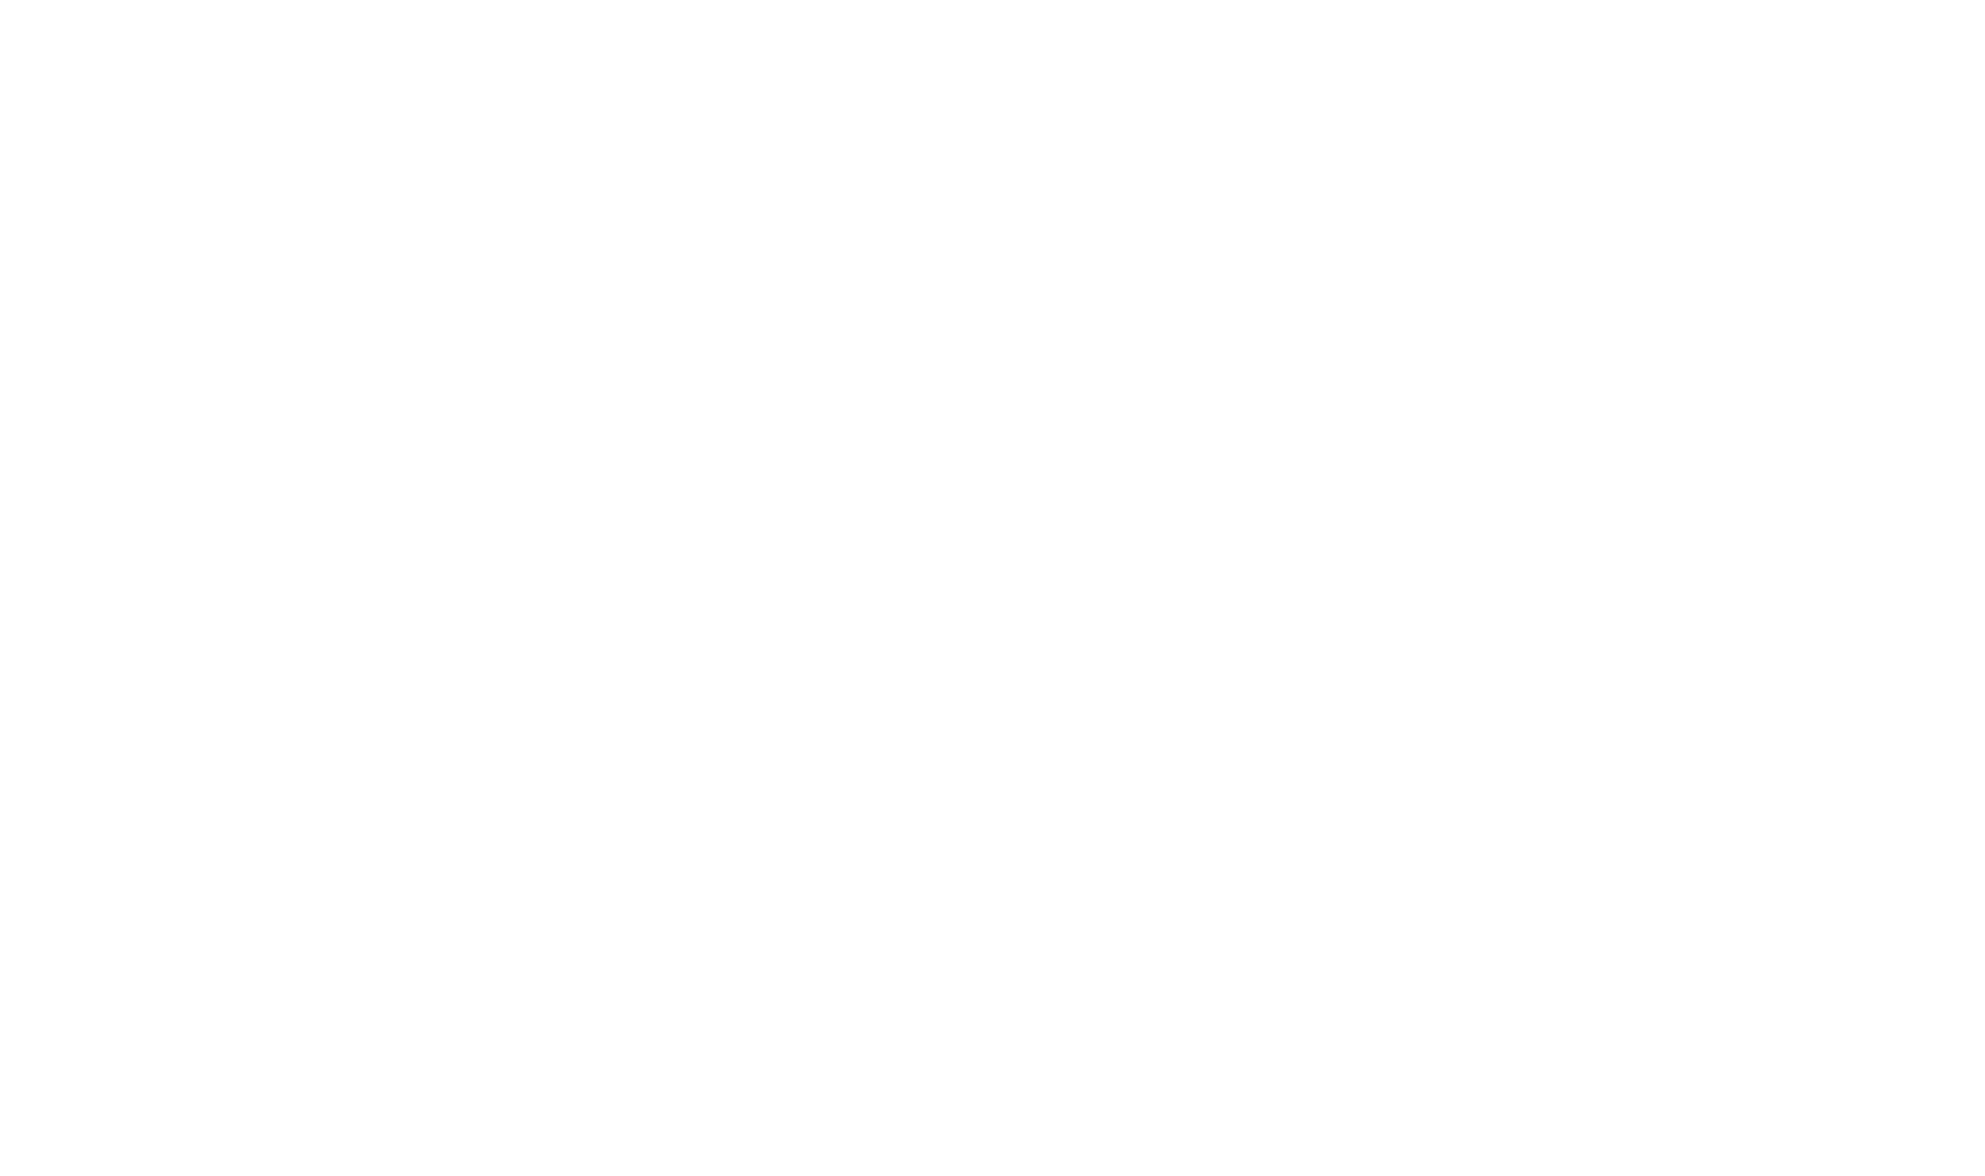 French corner logo